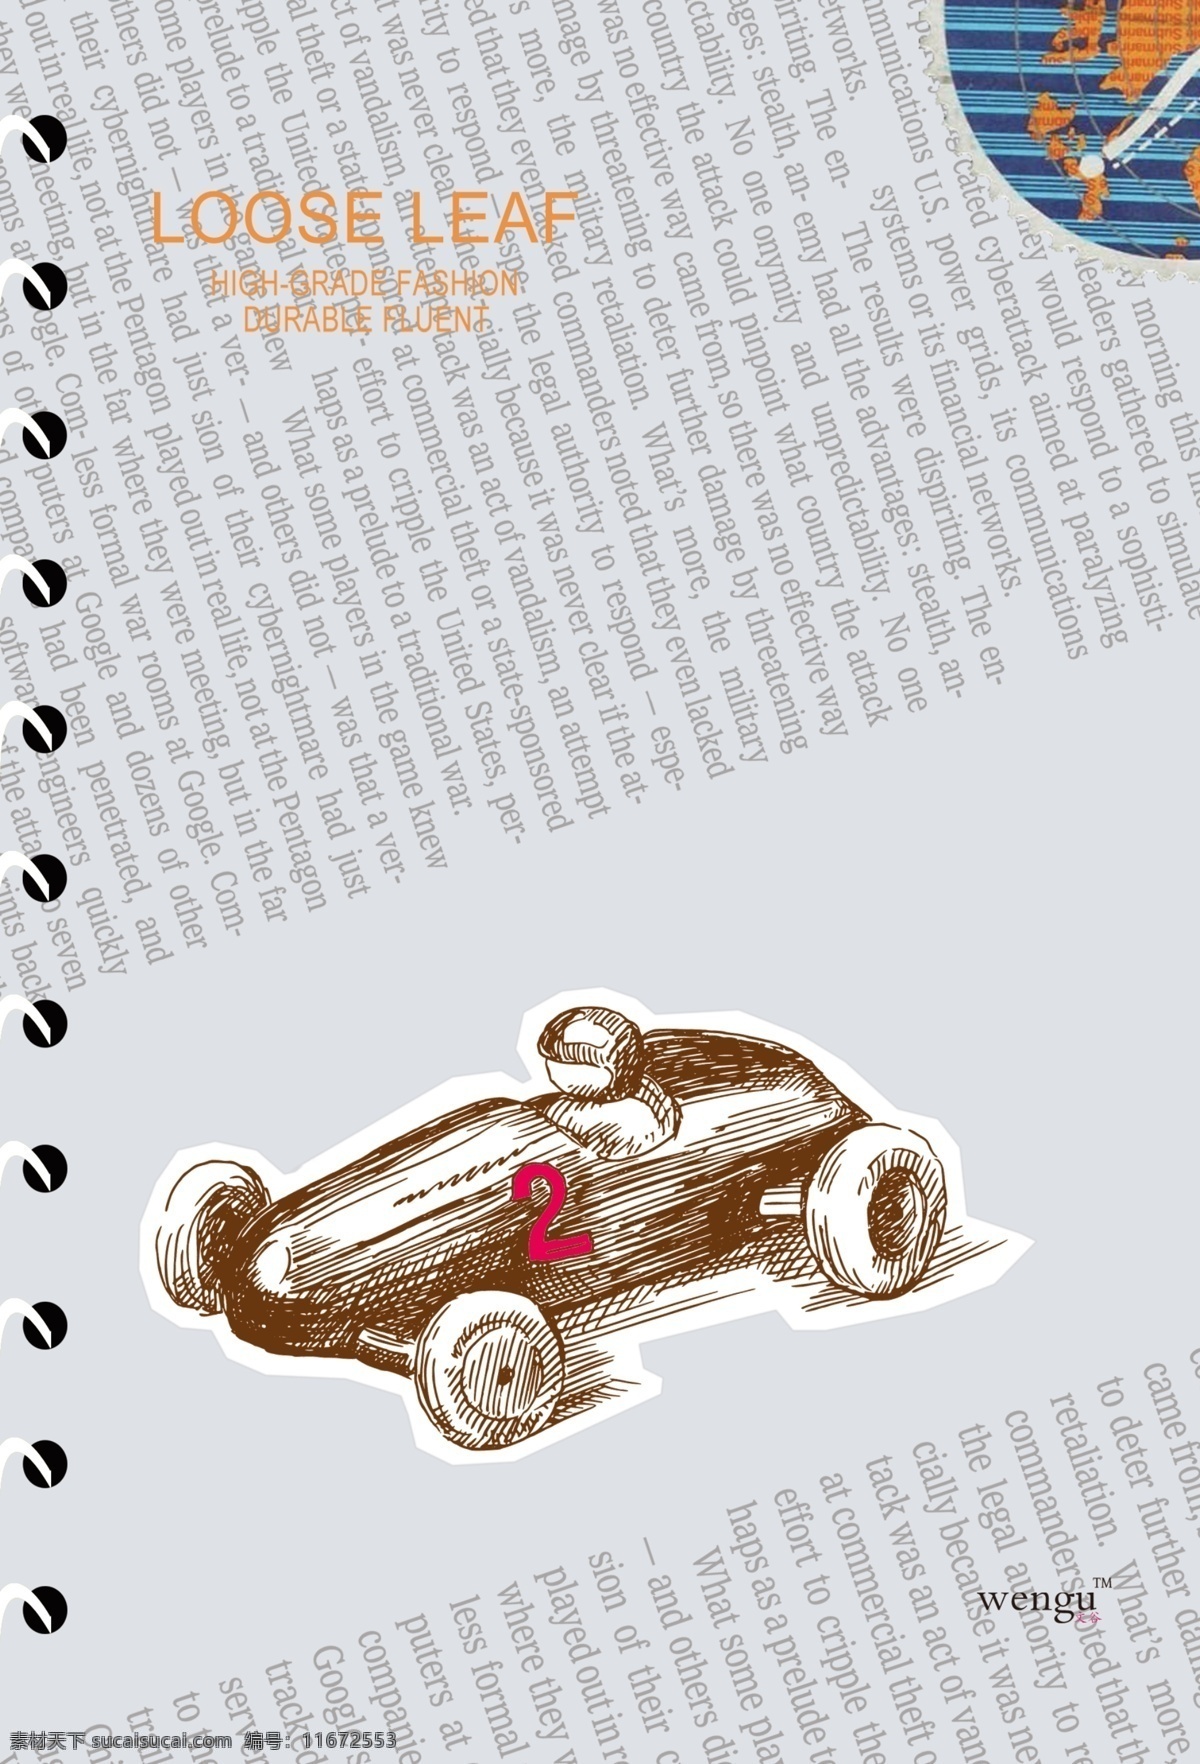 赛车 自述 复古 广告设计模板 画册设计 源文件 赛车的自述 活页本 其他画册封面